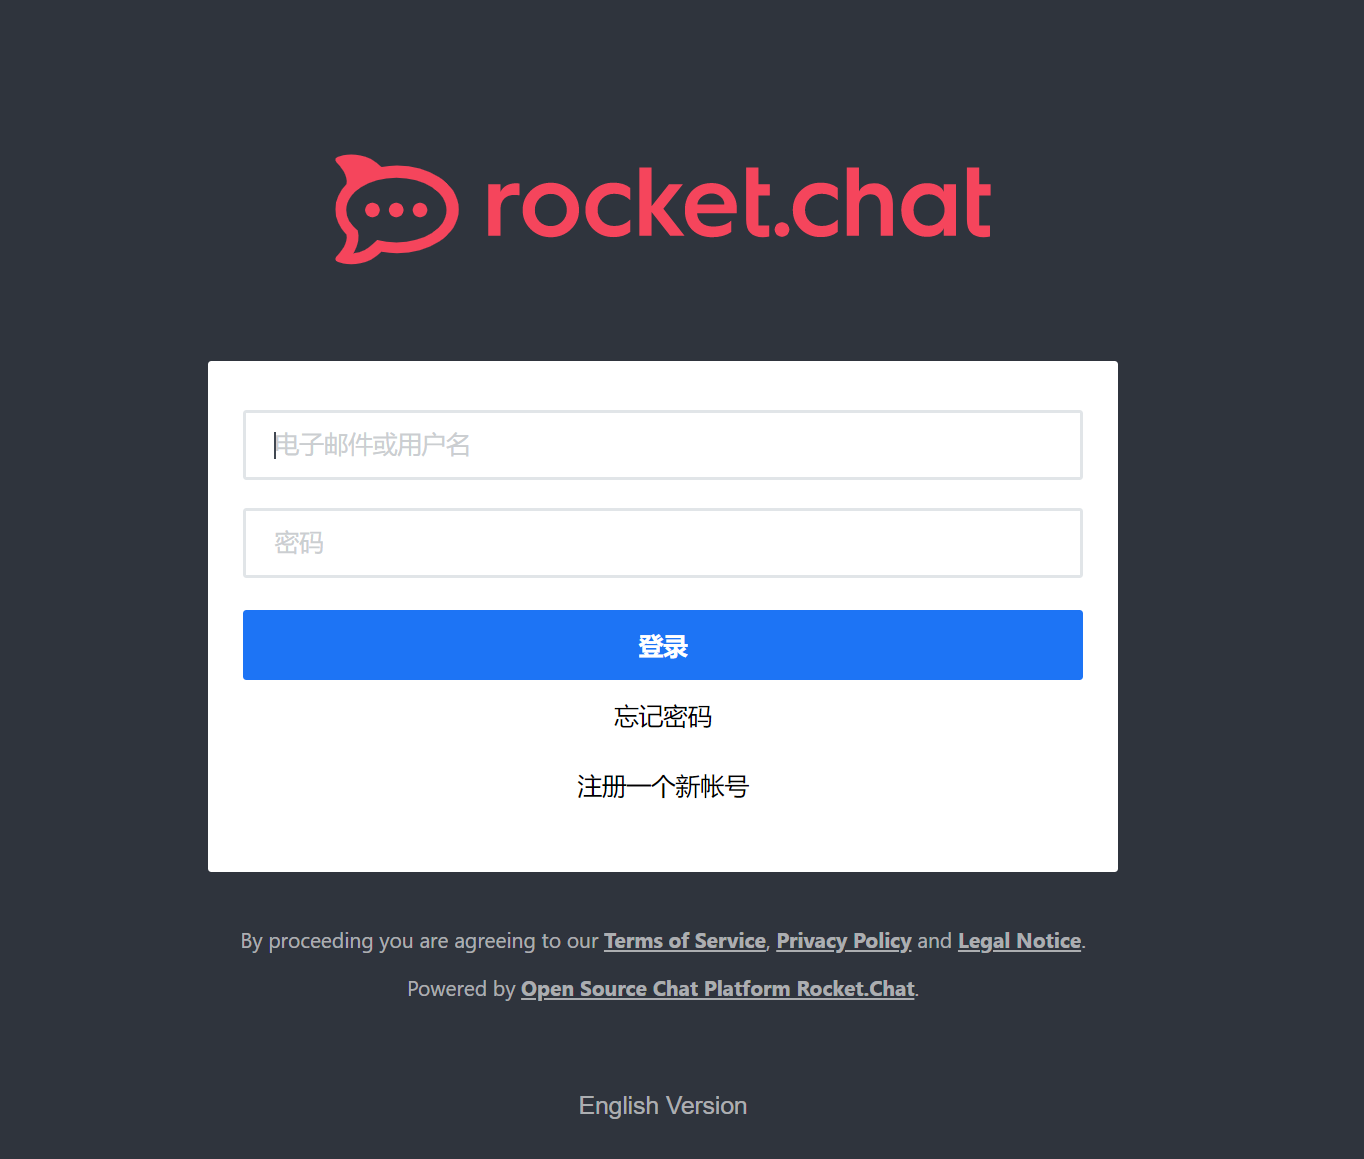 rocketchat-login.png